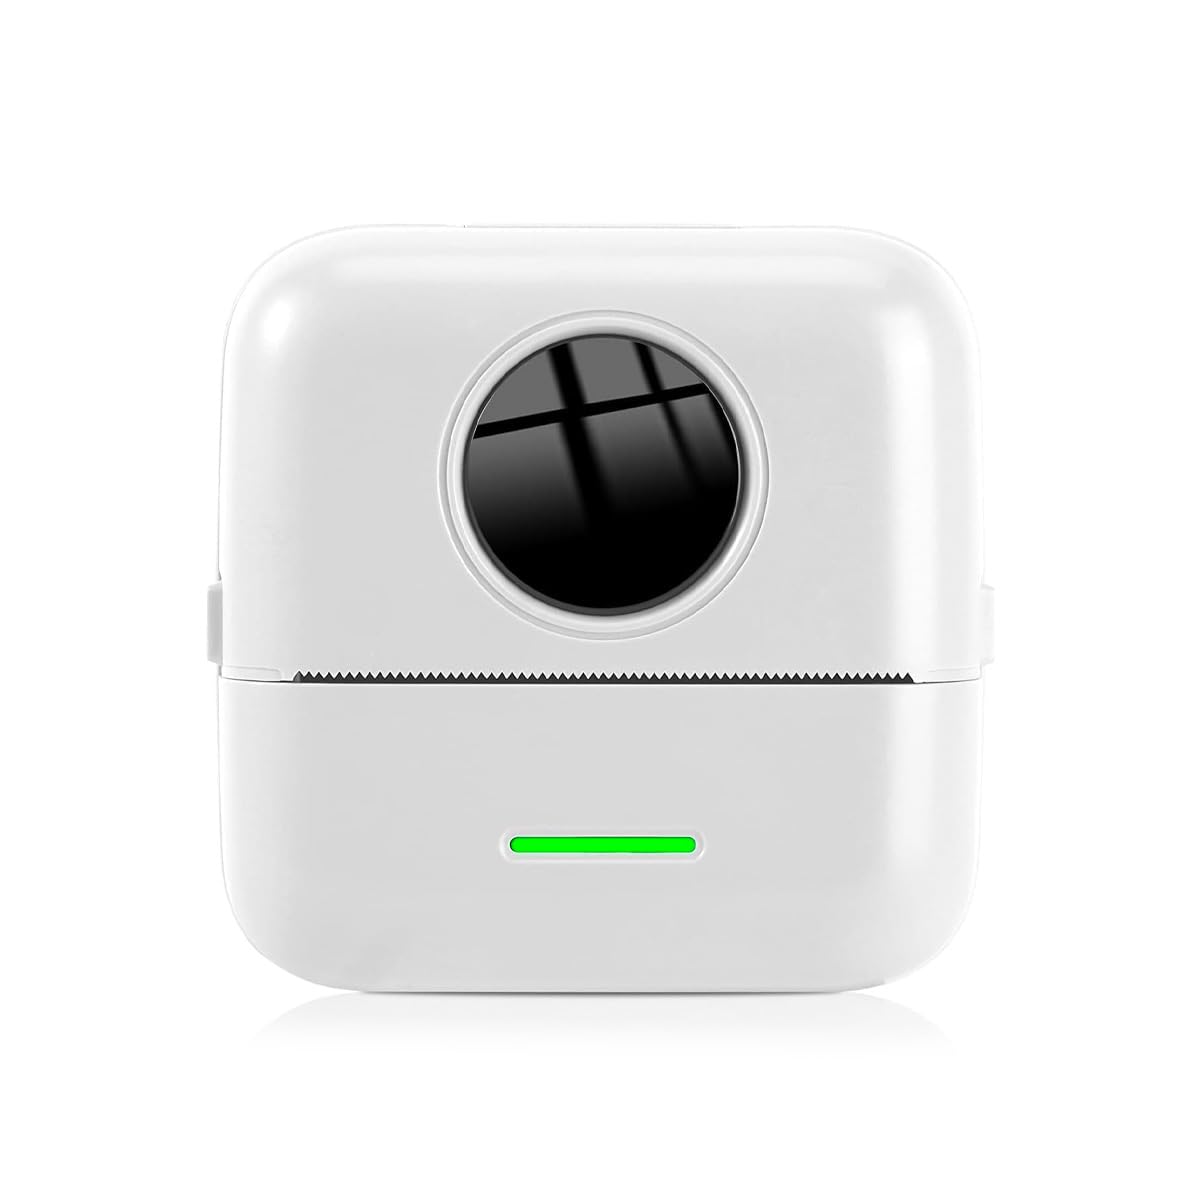 NK Tragbarer Fotodrucker – kabelloser Mini-Thermodrucker für Mobilgeräte, inklusive Papierrolle und USB-Kabel, kompatibel mit iOS und Android, weiße Farbe